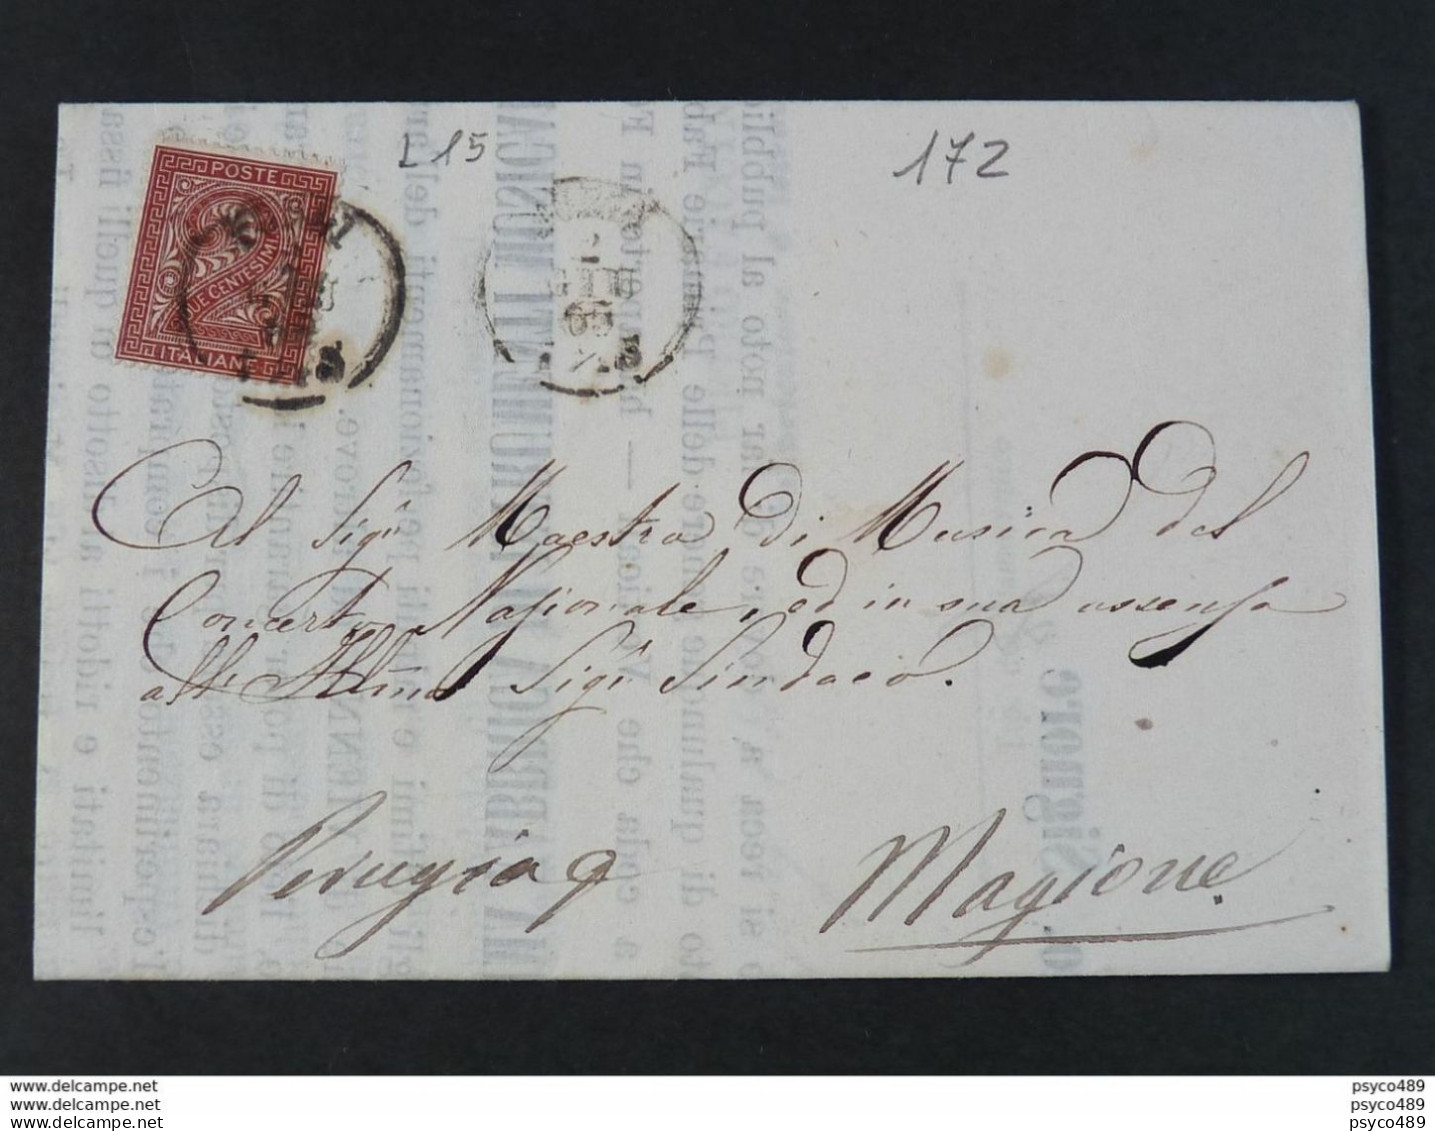 172 ITALIA Regno-1865- "L 15 Cifra Londra" C. 2 FORLI'>MAGIONE (descrizione) - Storia Postale